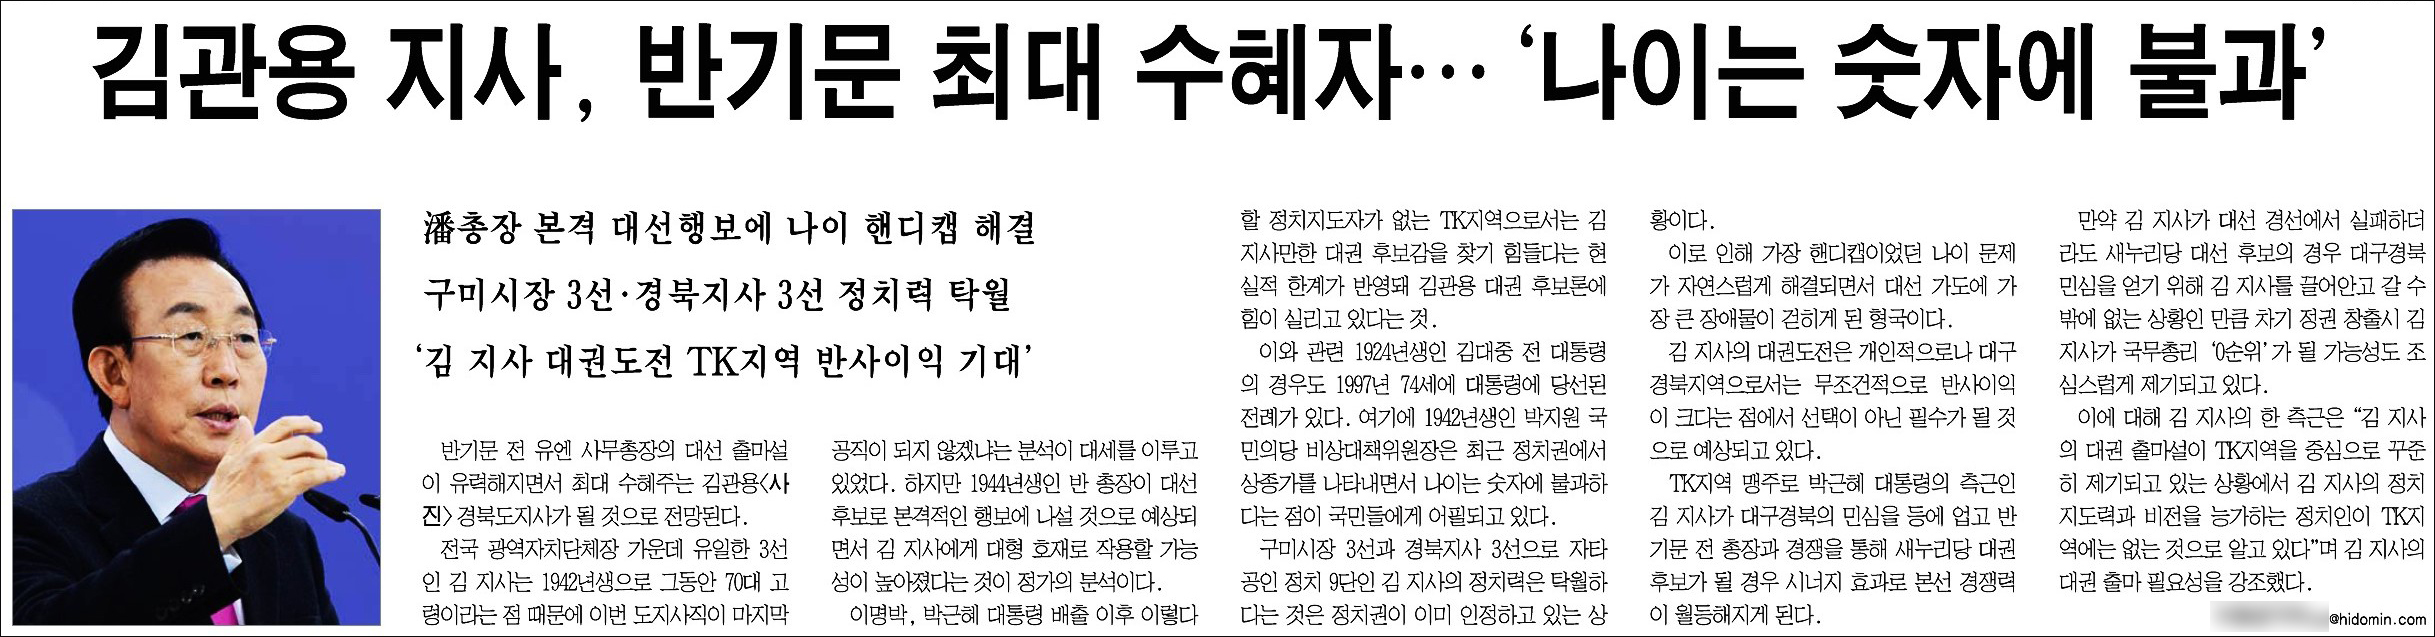 <경북도민일보> 2017년 1월 10일자 3면(정치)